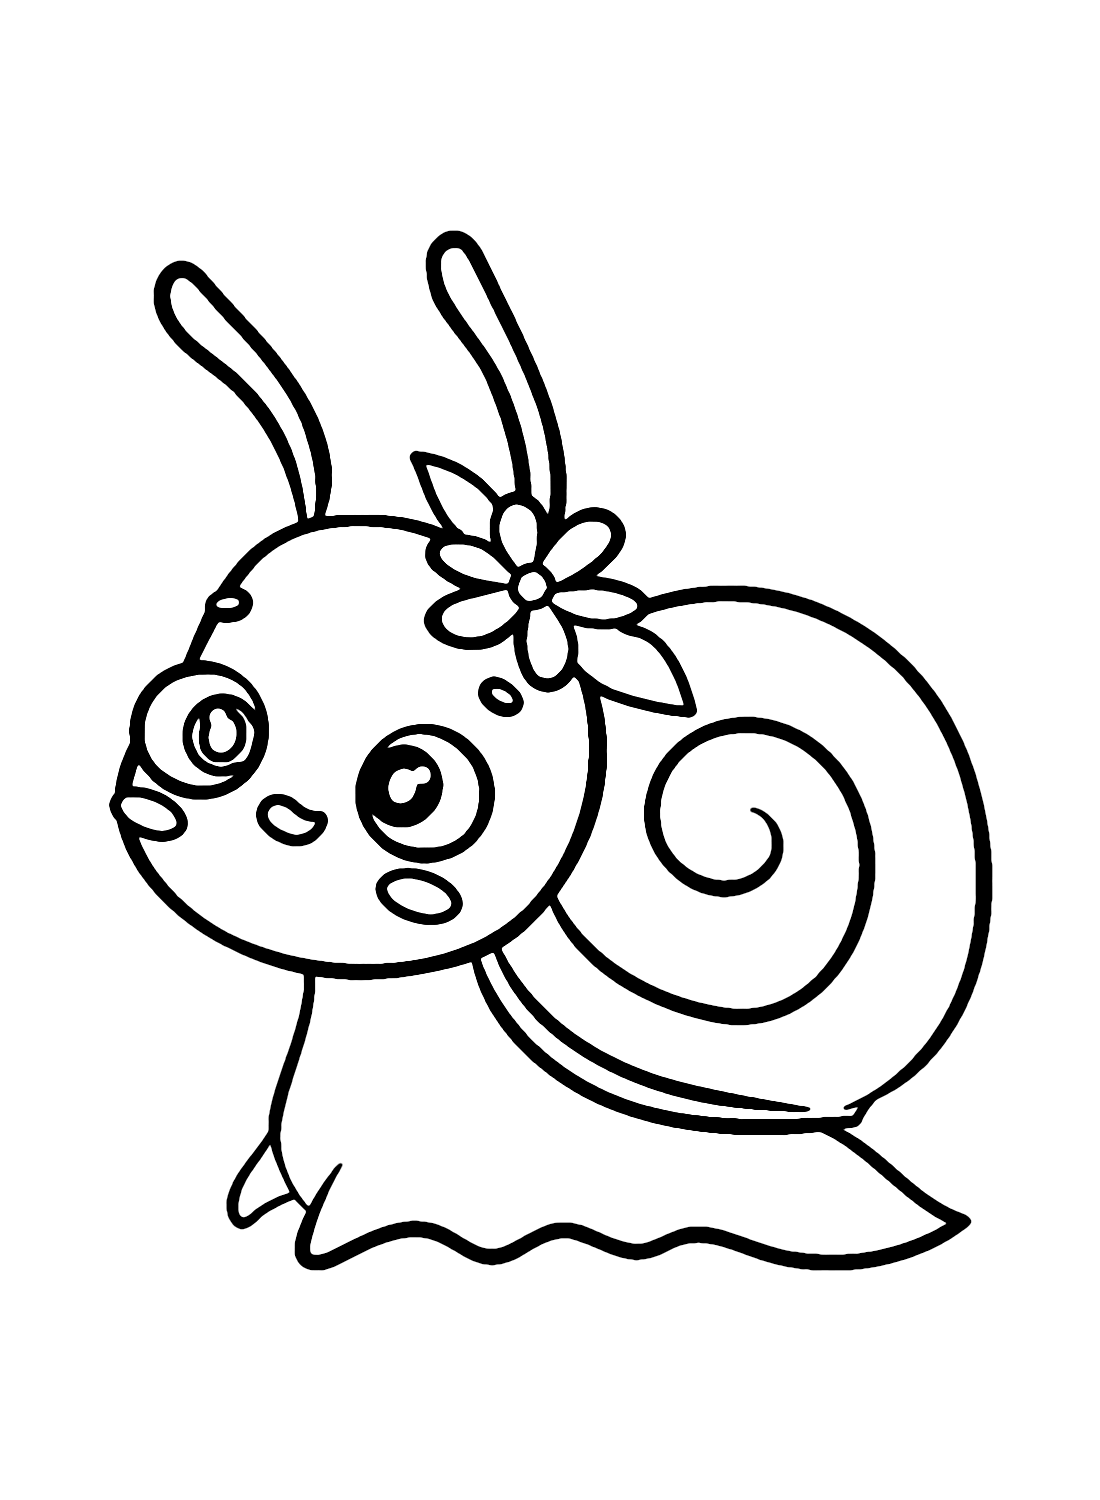 可爱的卡哇伊蜗牛从蜗牛